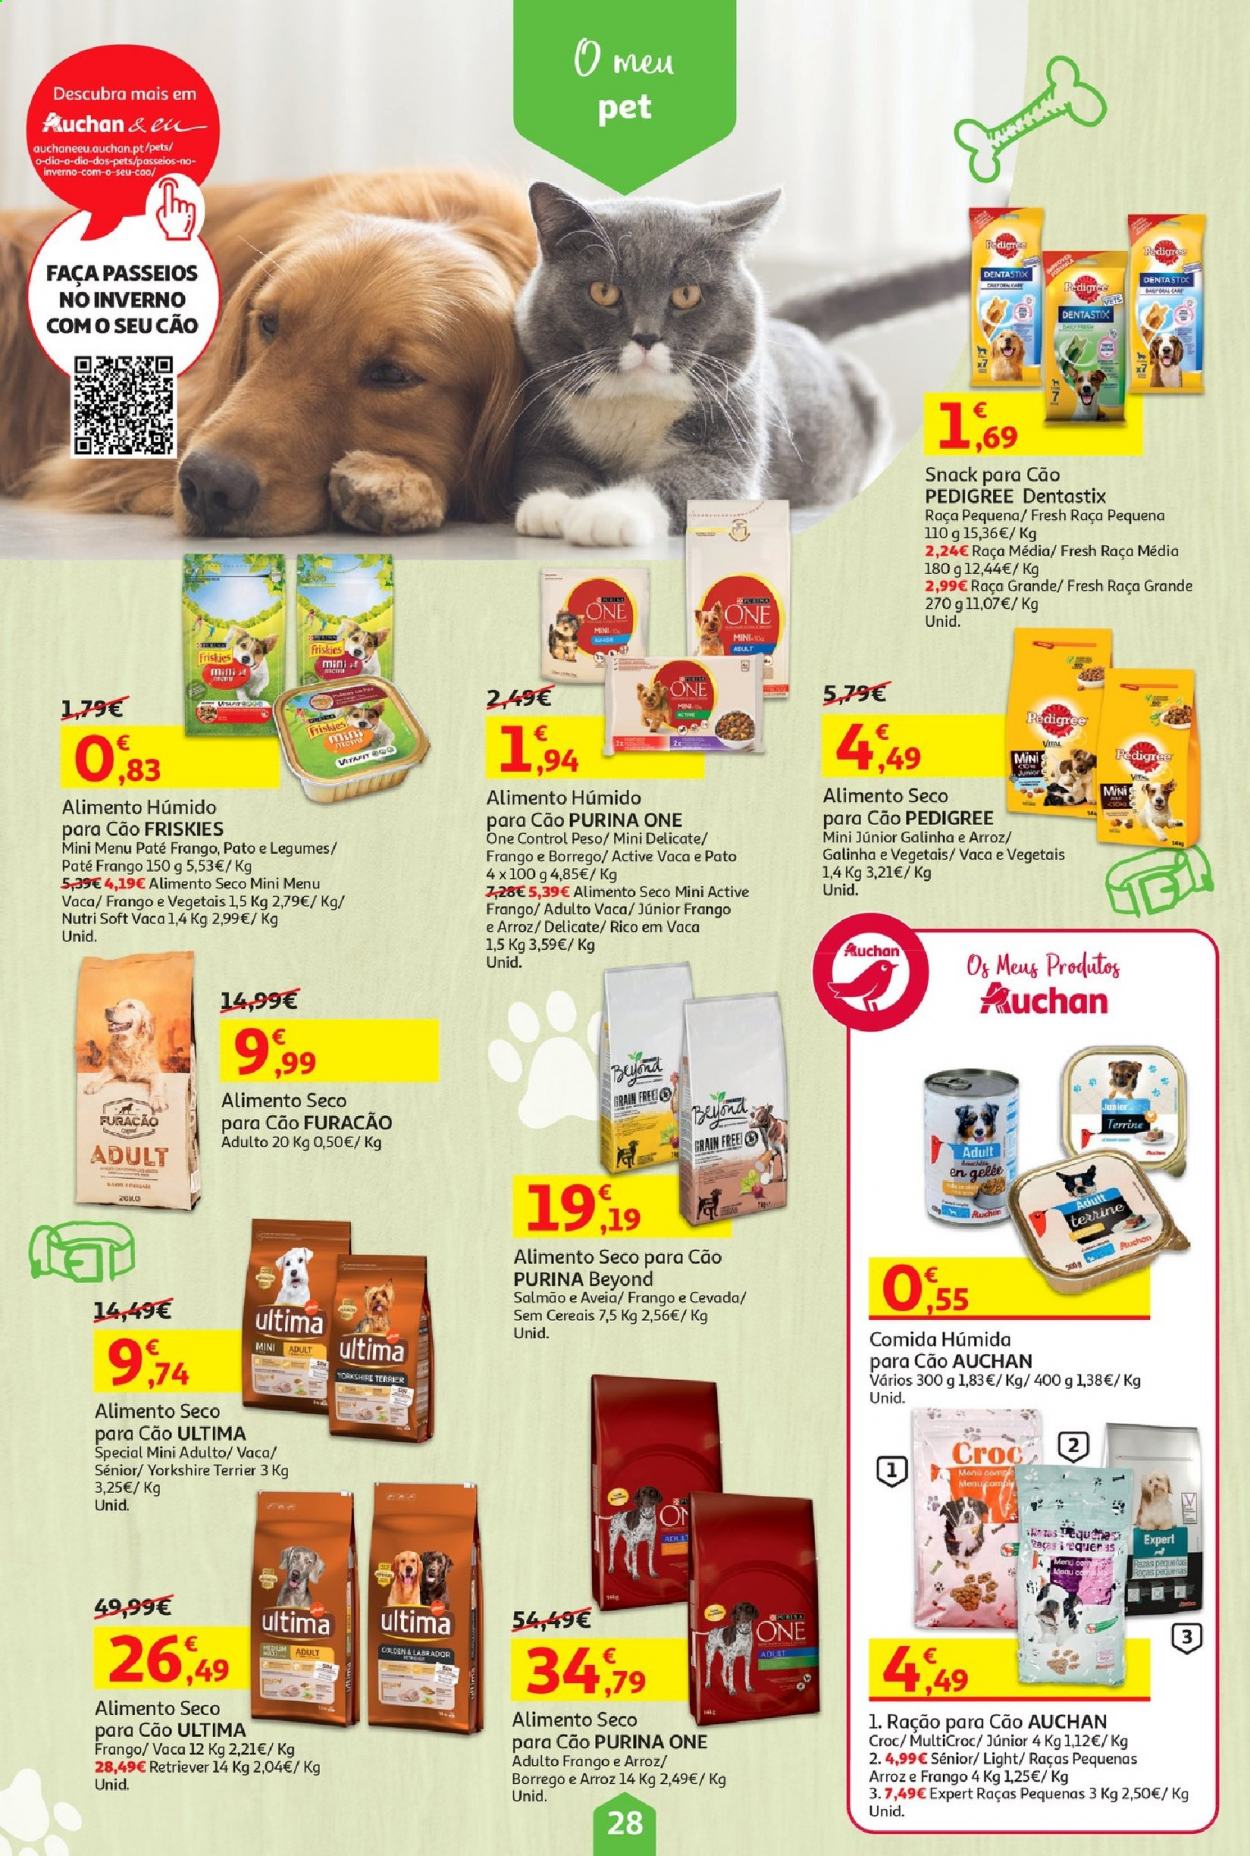 thumbnail - Folheto Auchan - 8.1.2021 - 21.1.2021 - Produtos em promoção - faca, alimentos para cães, Friskies, Pedigree, Purina, ração, Dentastix. Página 28.